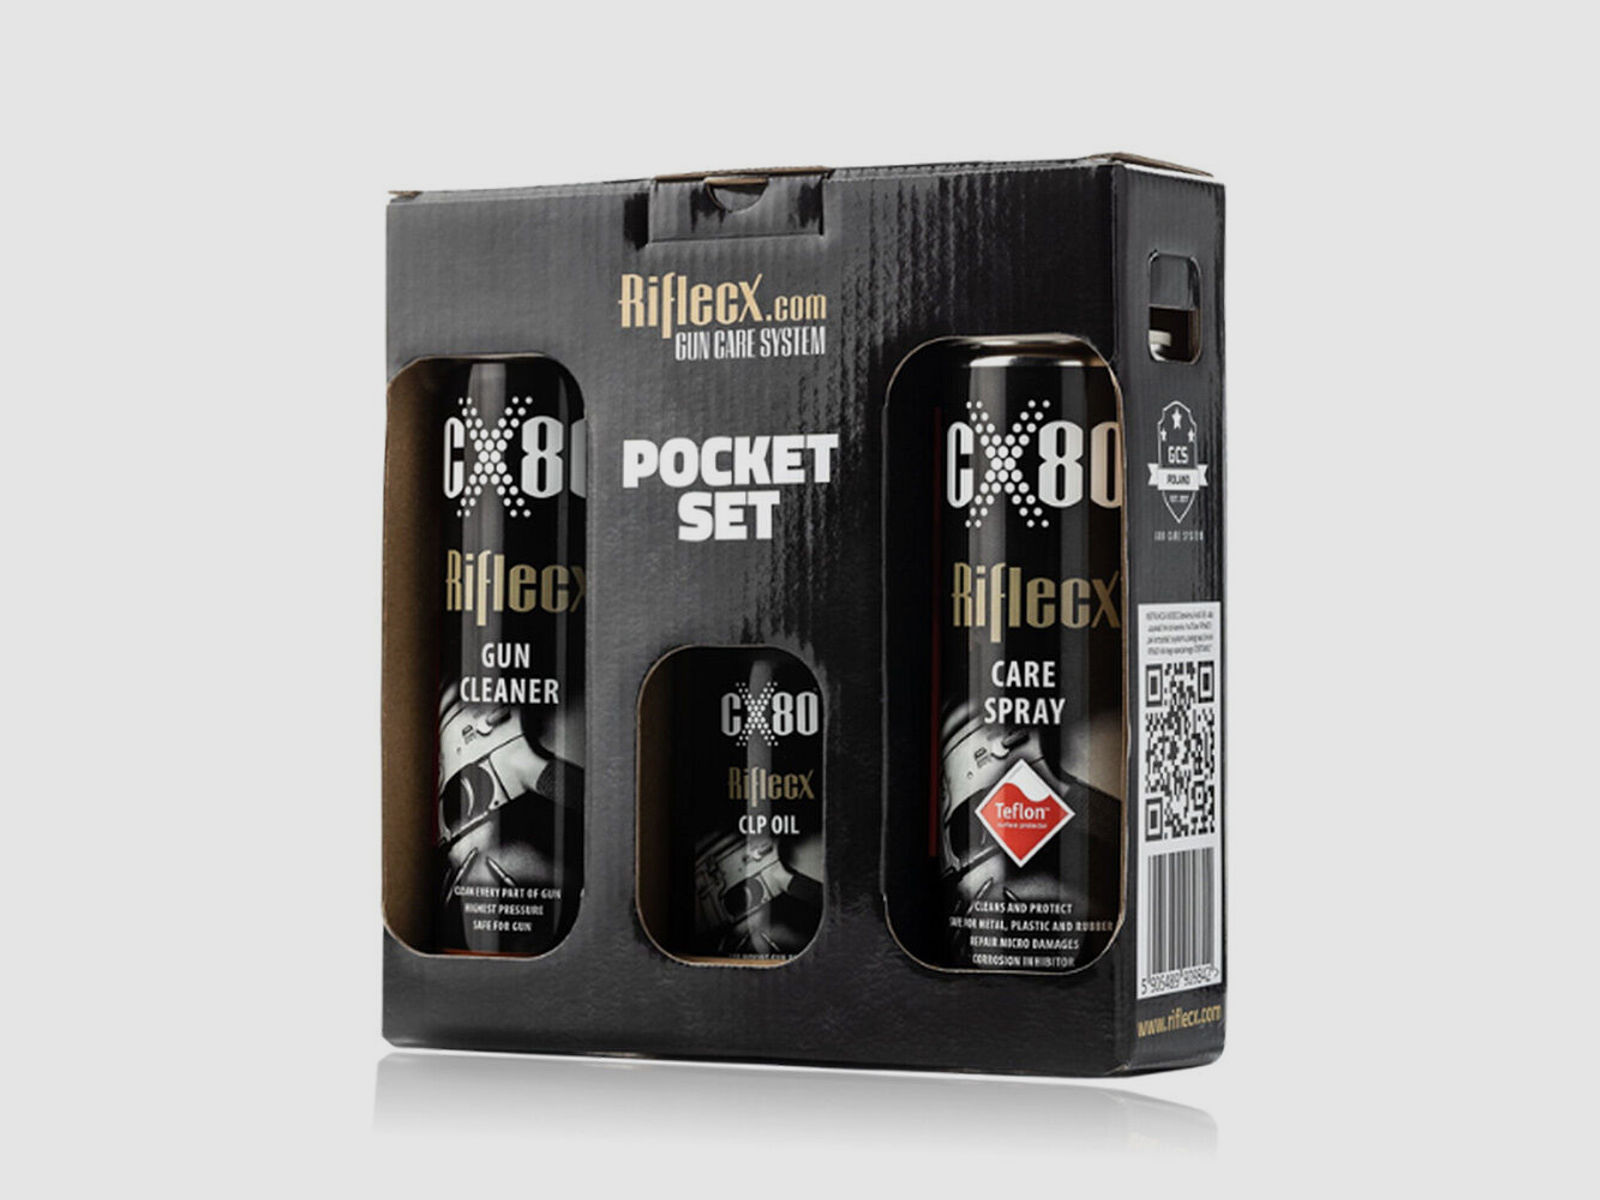 Rifle CX	 Pocket Set Reinigung Pflege 3 Artikel + Box